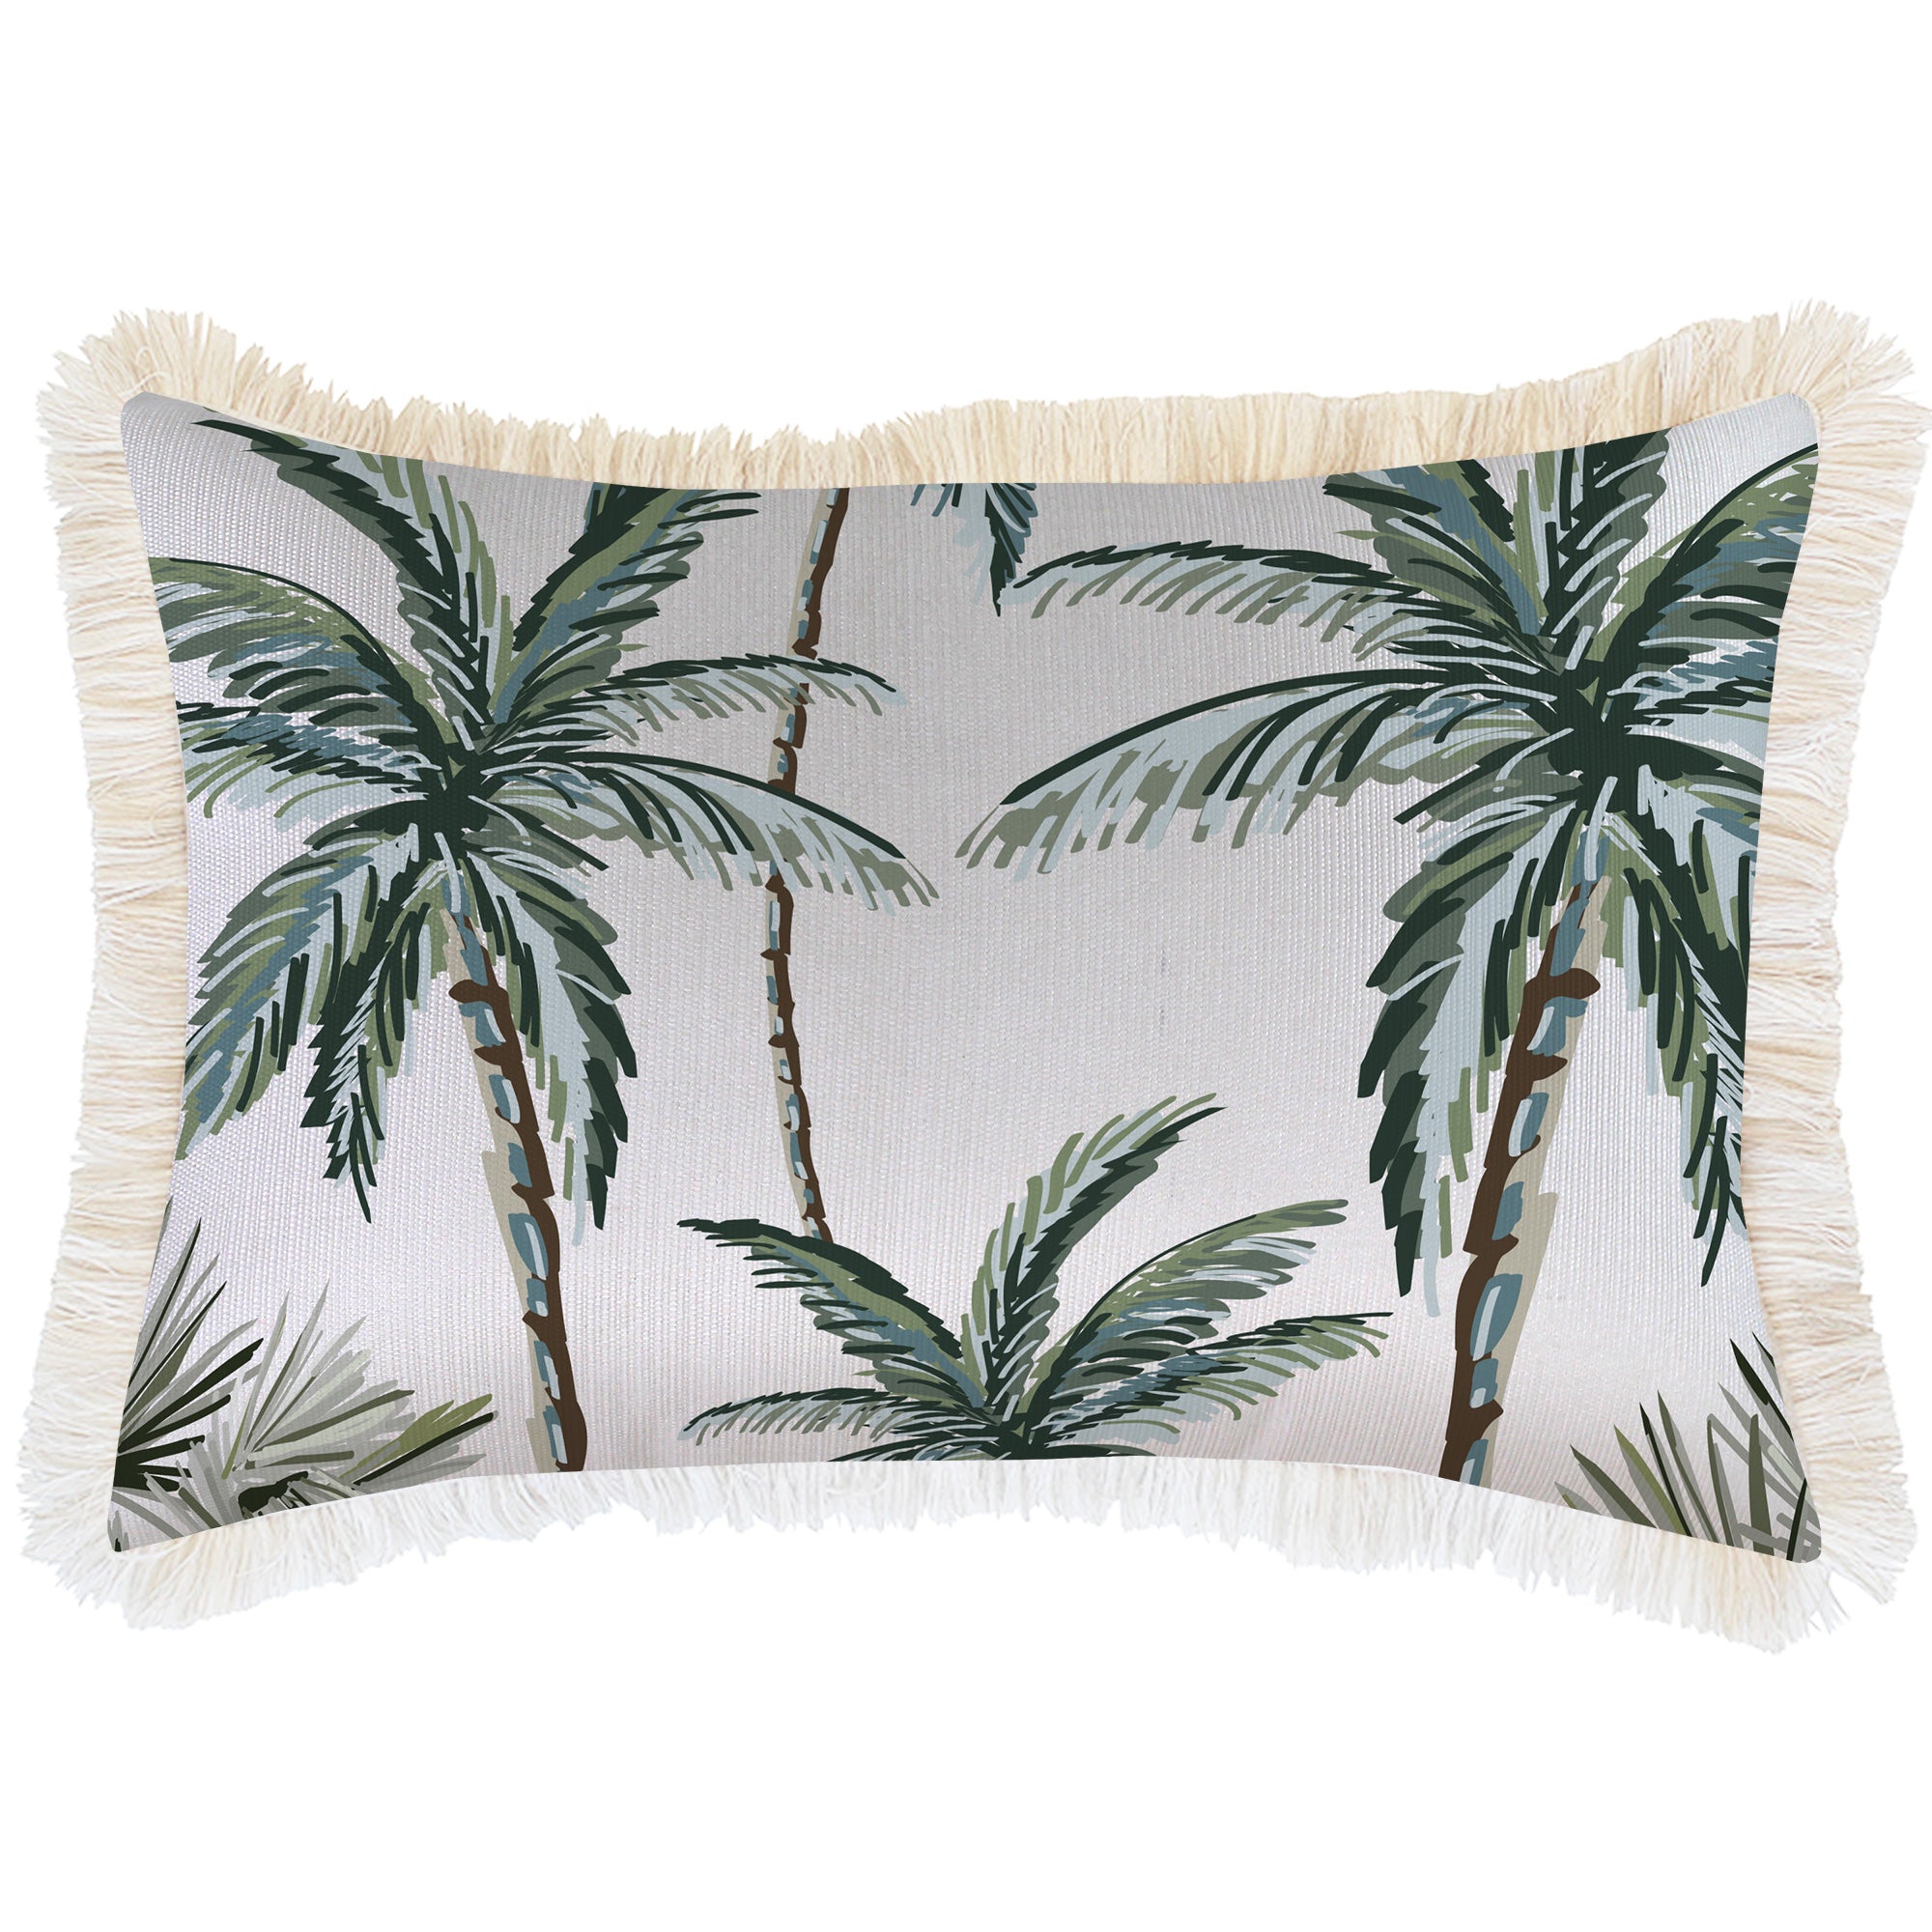 cushion-cover-coastal-fringe-palm-tree-paradise-white-35cm-x-50cm